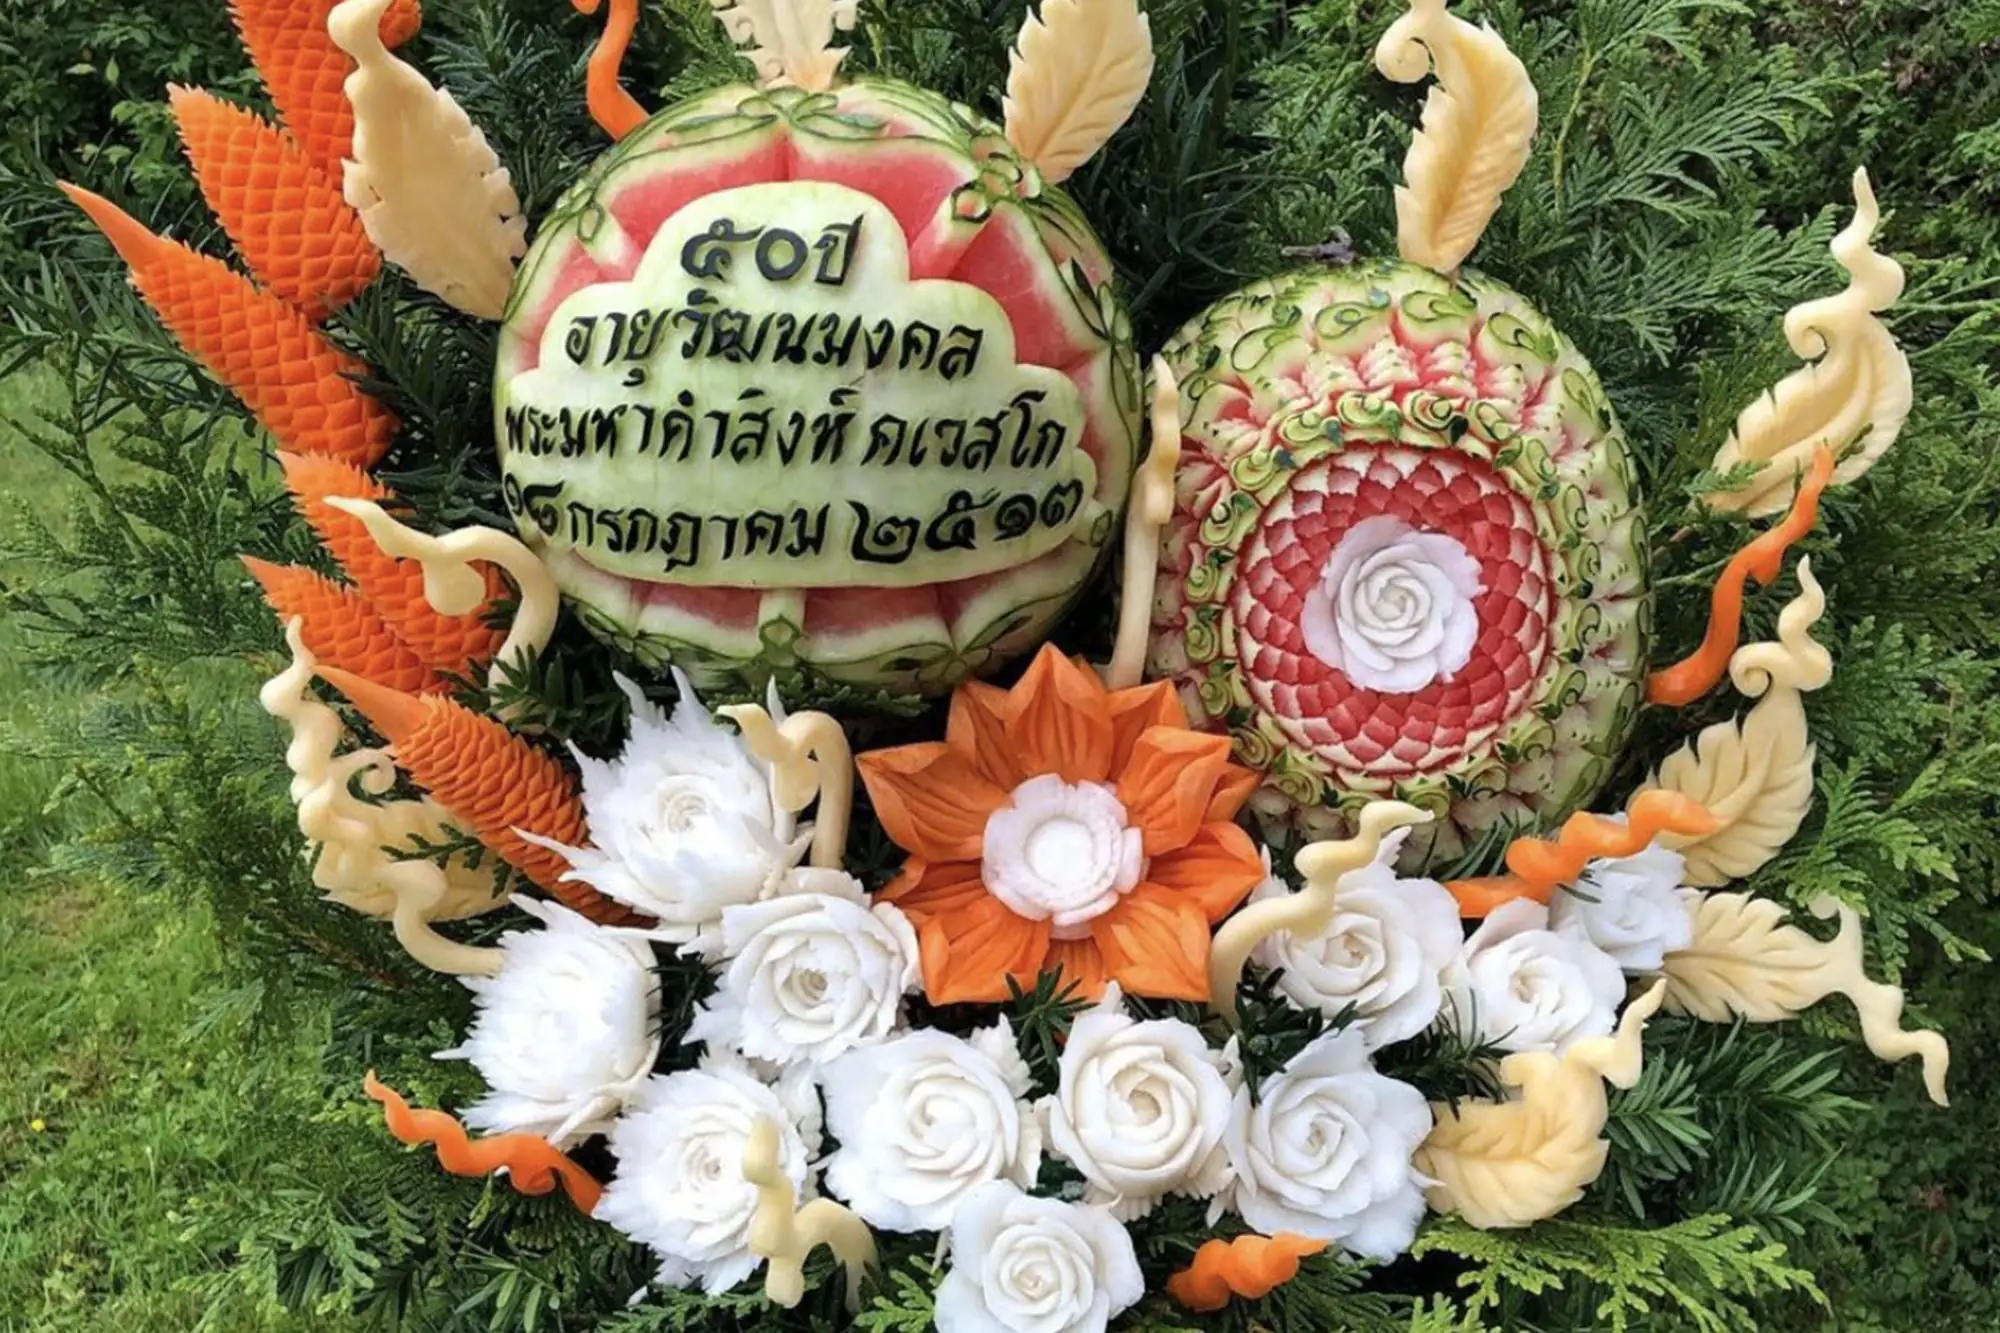 泰國人擅長把水果雕刻成花卉的圖案（圖片來源：IG@supattragravningenfruitcarving）